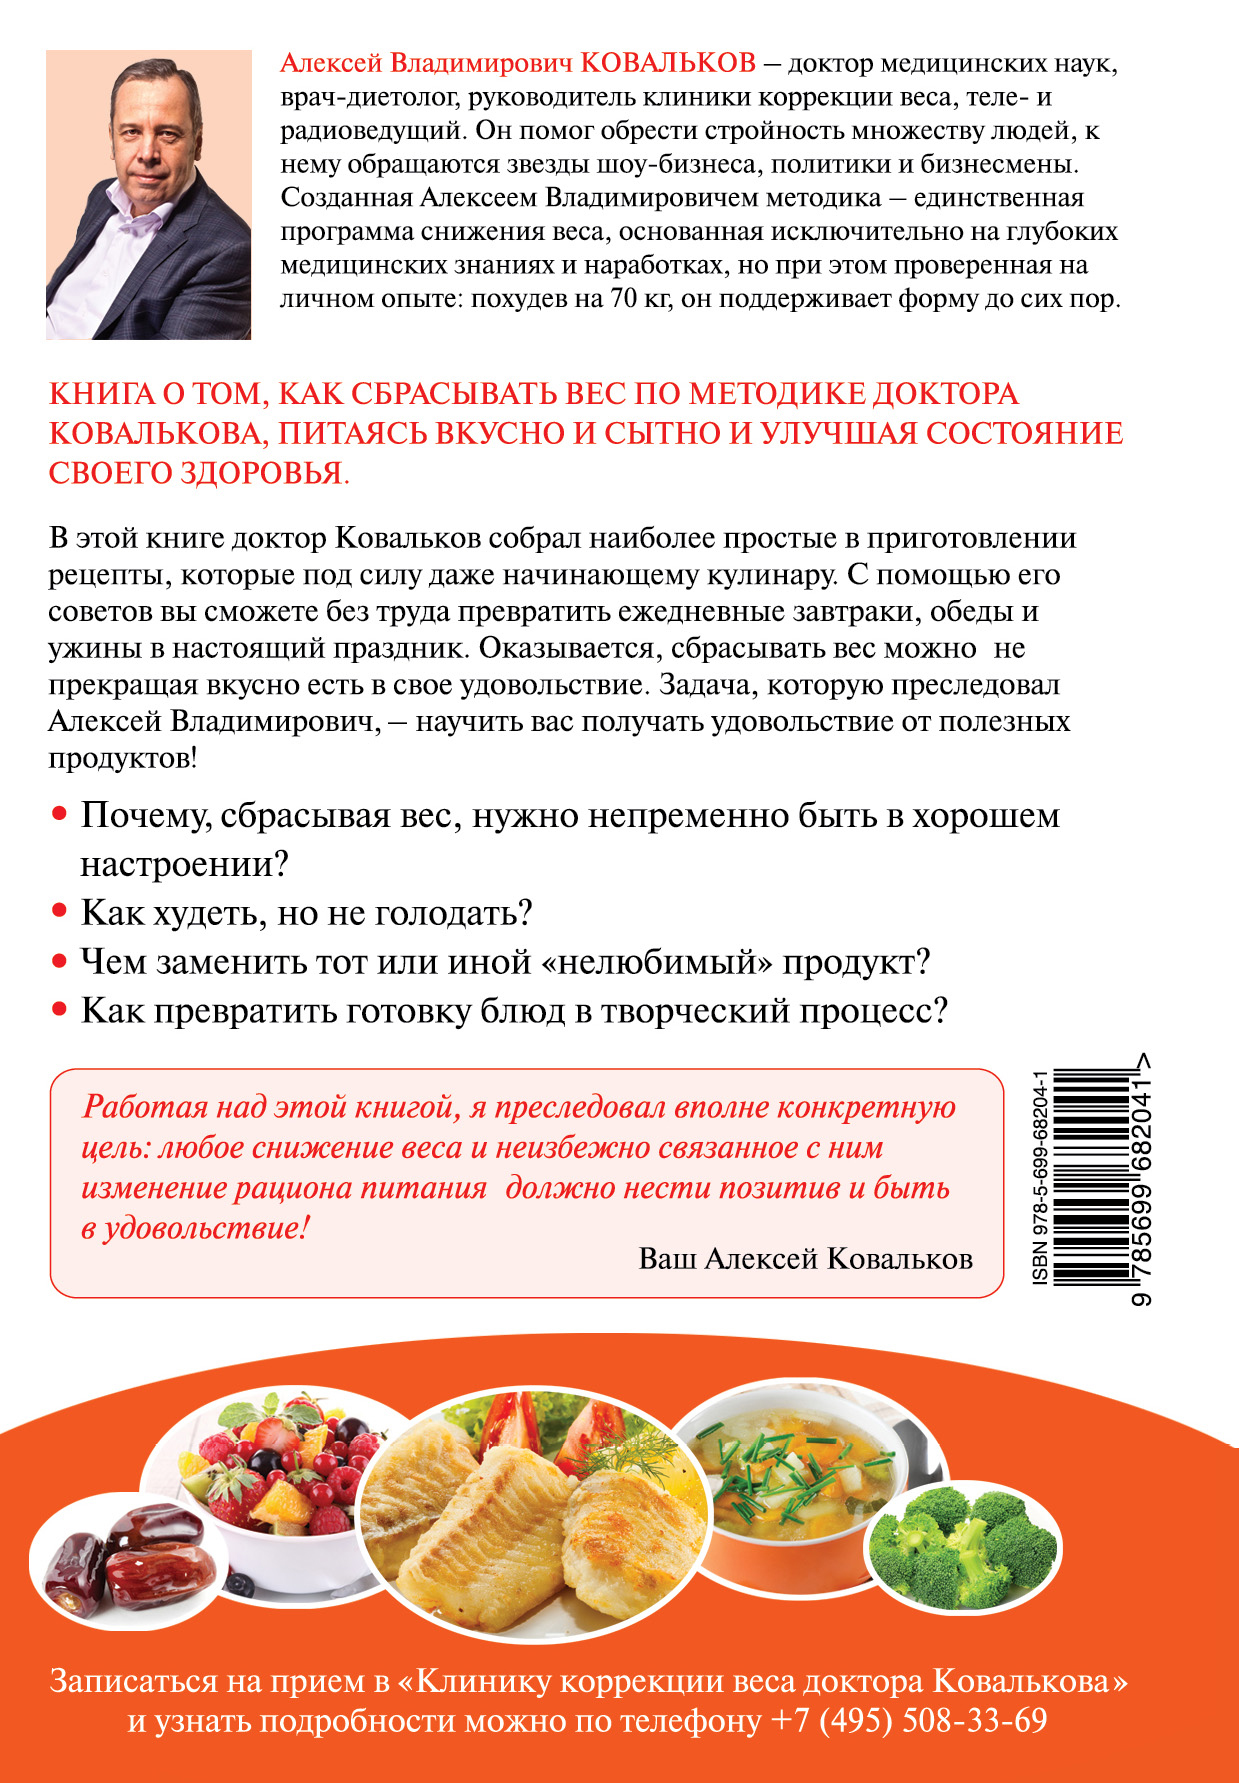 Рецепты Диеты Ковалькова